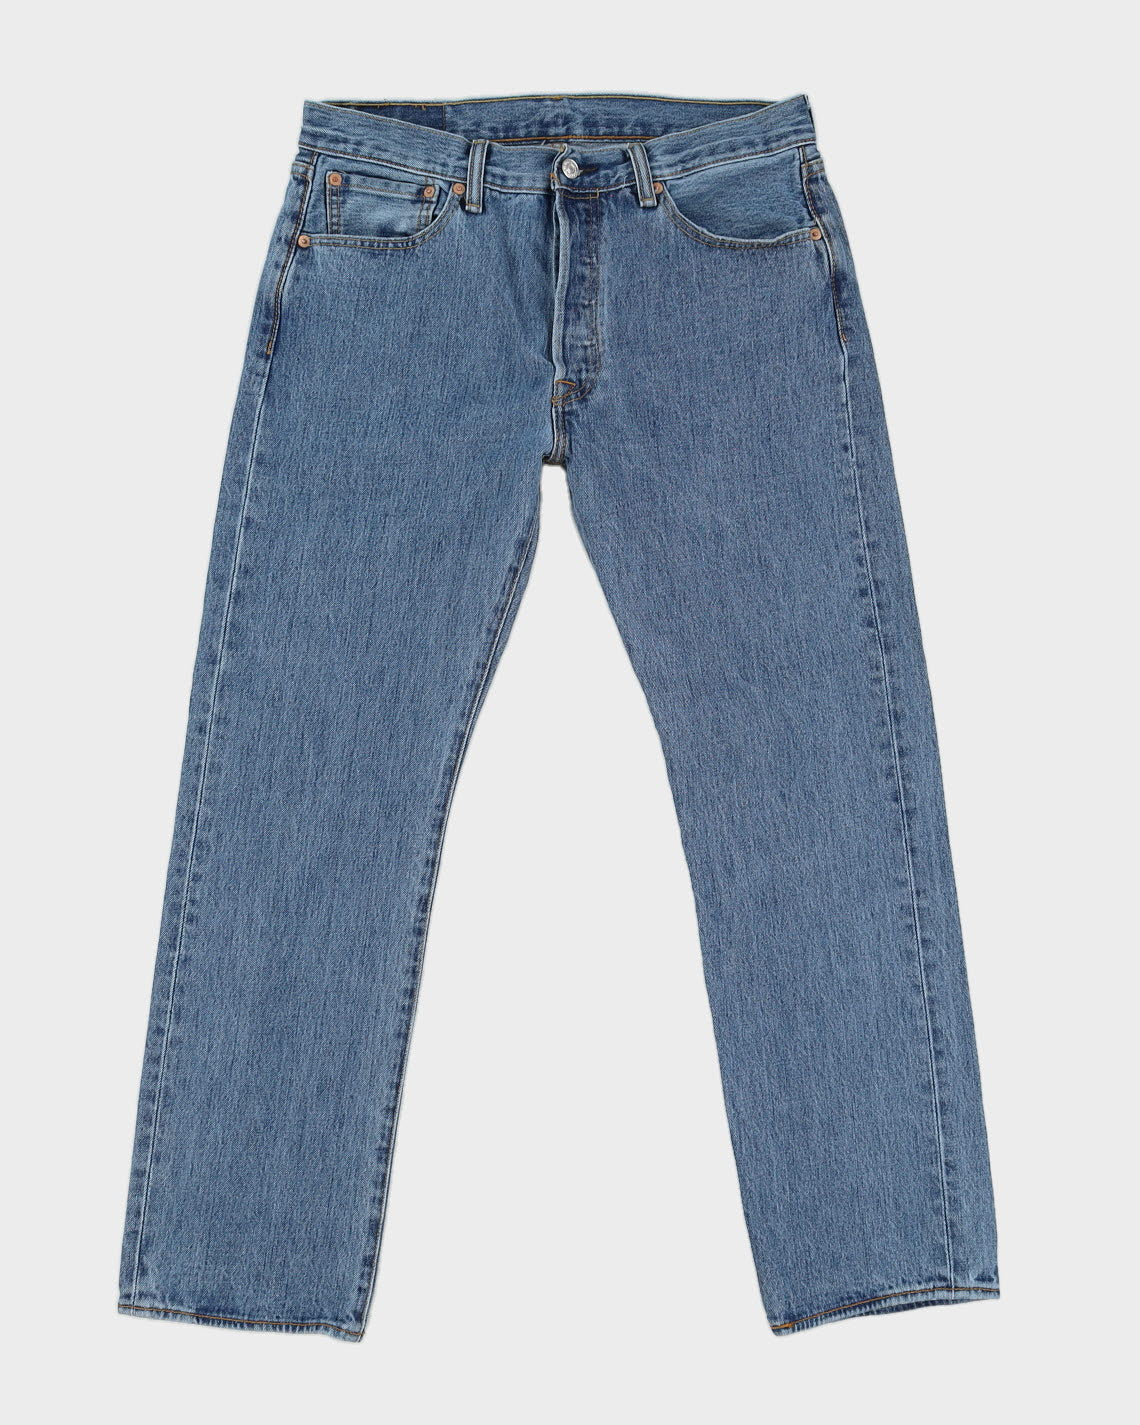 Levi's 501 Blue Jeans - W33 L30